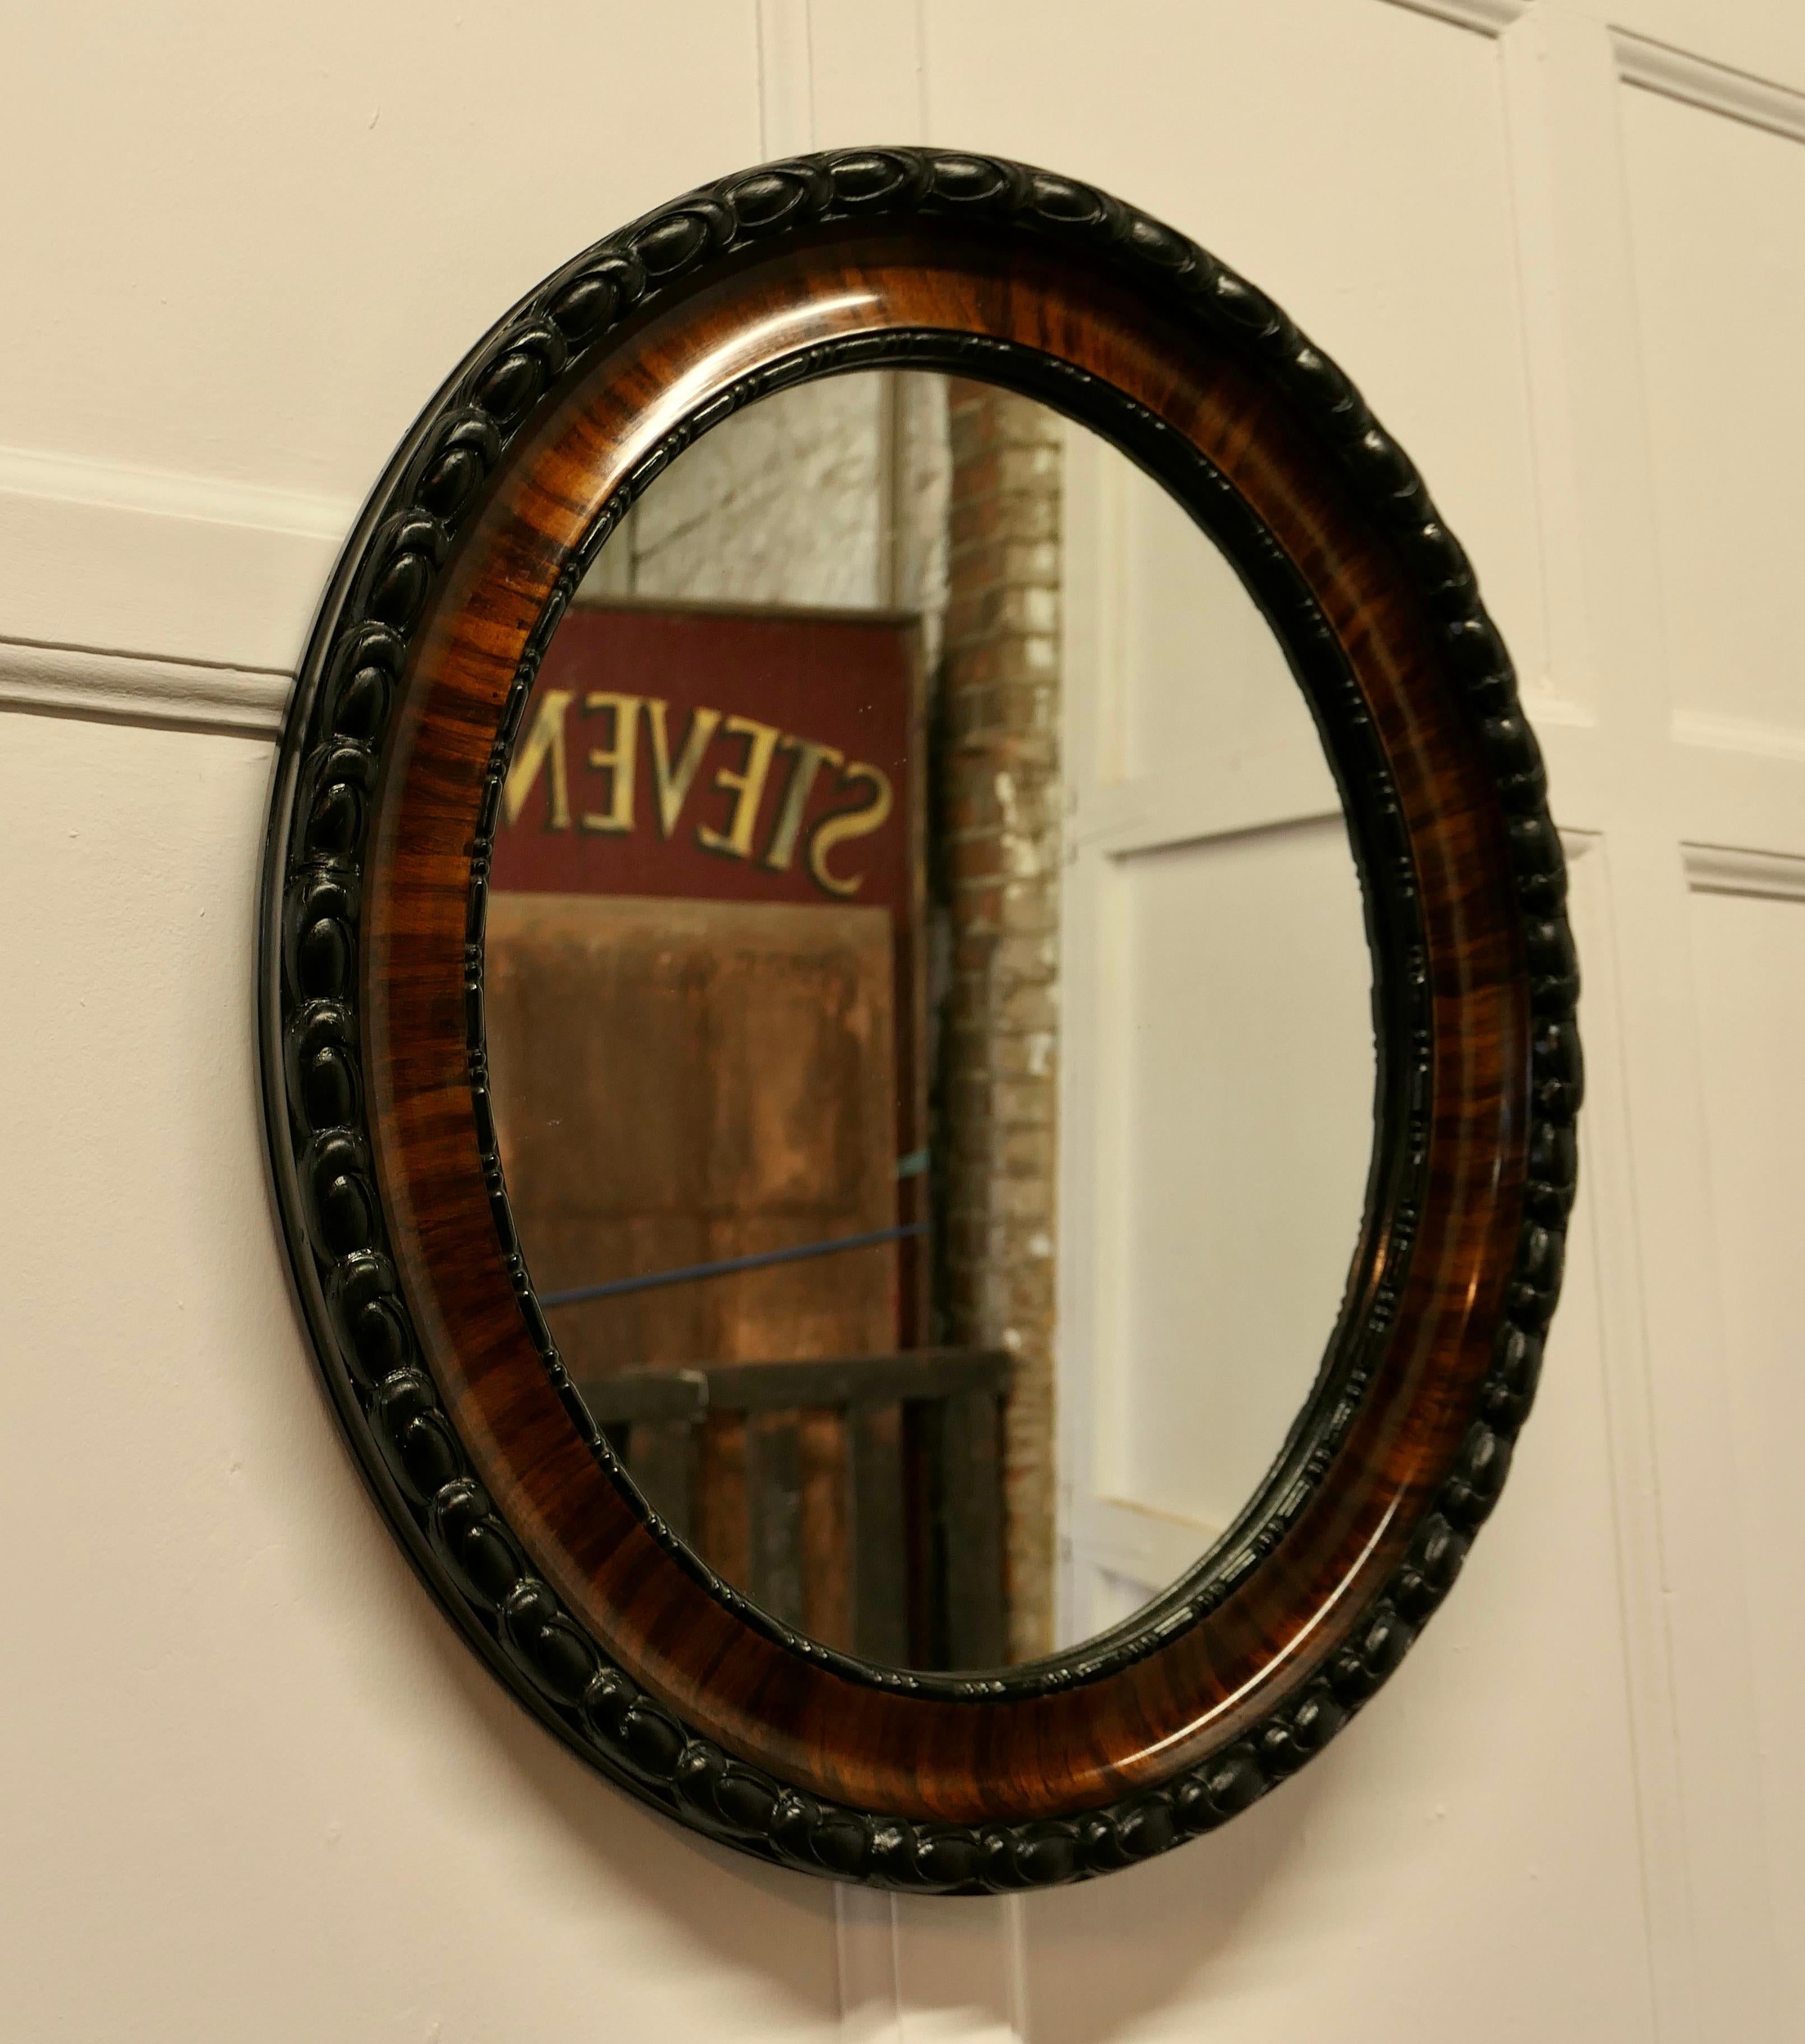 Miroir ovale de style édouardien, finition scumble.

Ce miroir a un cadre ovale moulé de 3